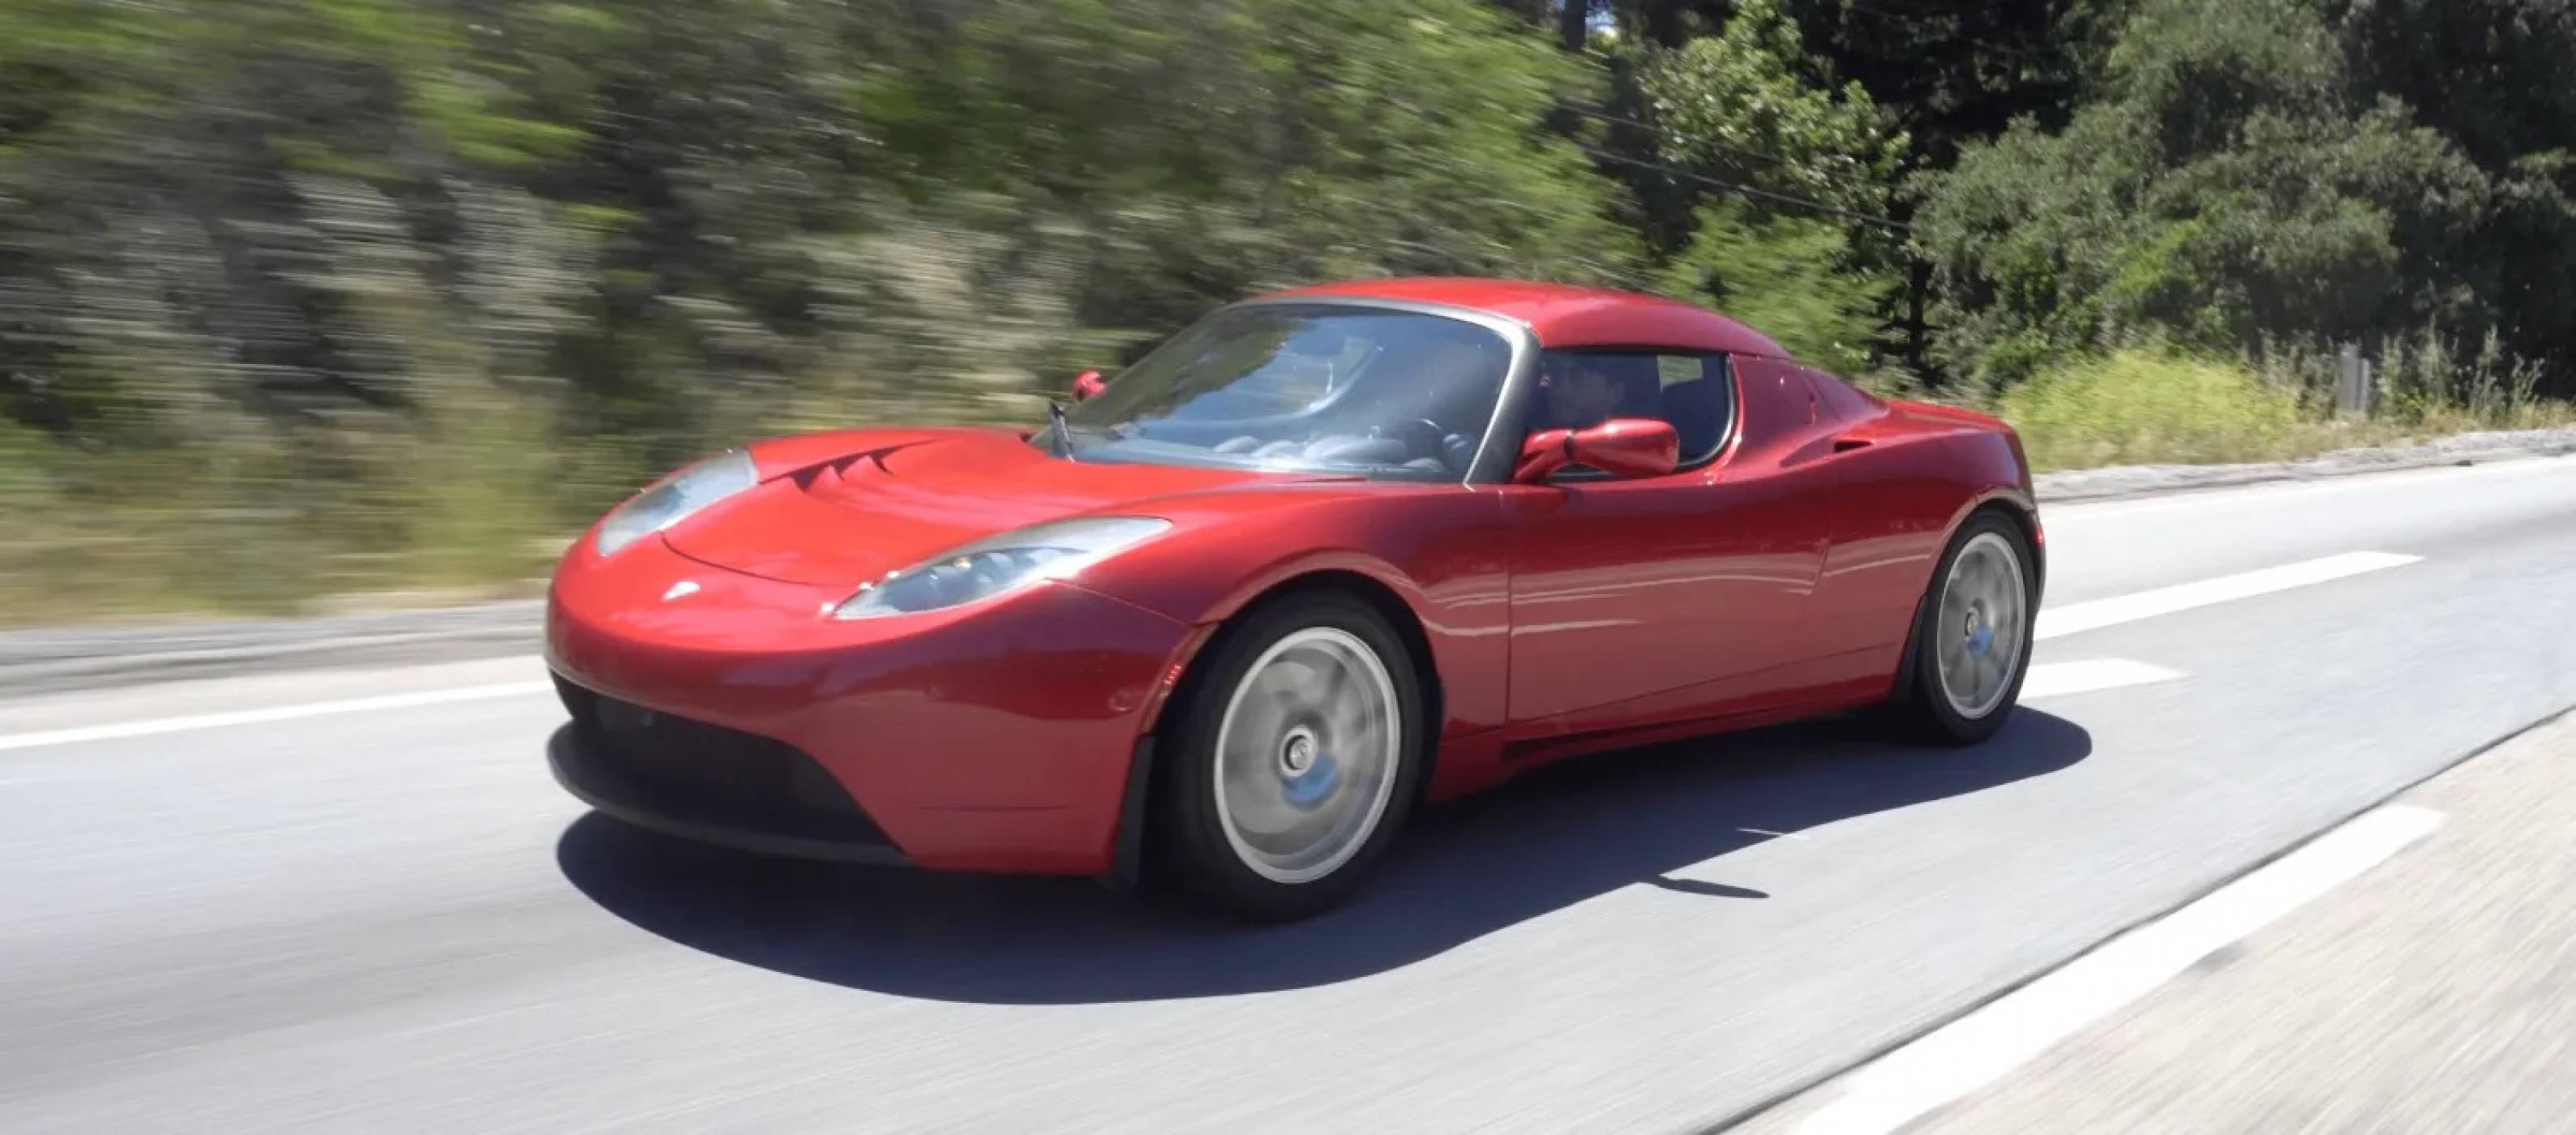  Tesla Roadster не се произвежда от десетилетие и вече се превръща в ценен колекционерски модел